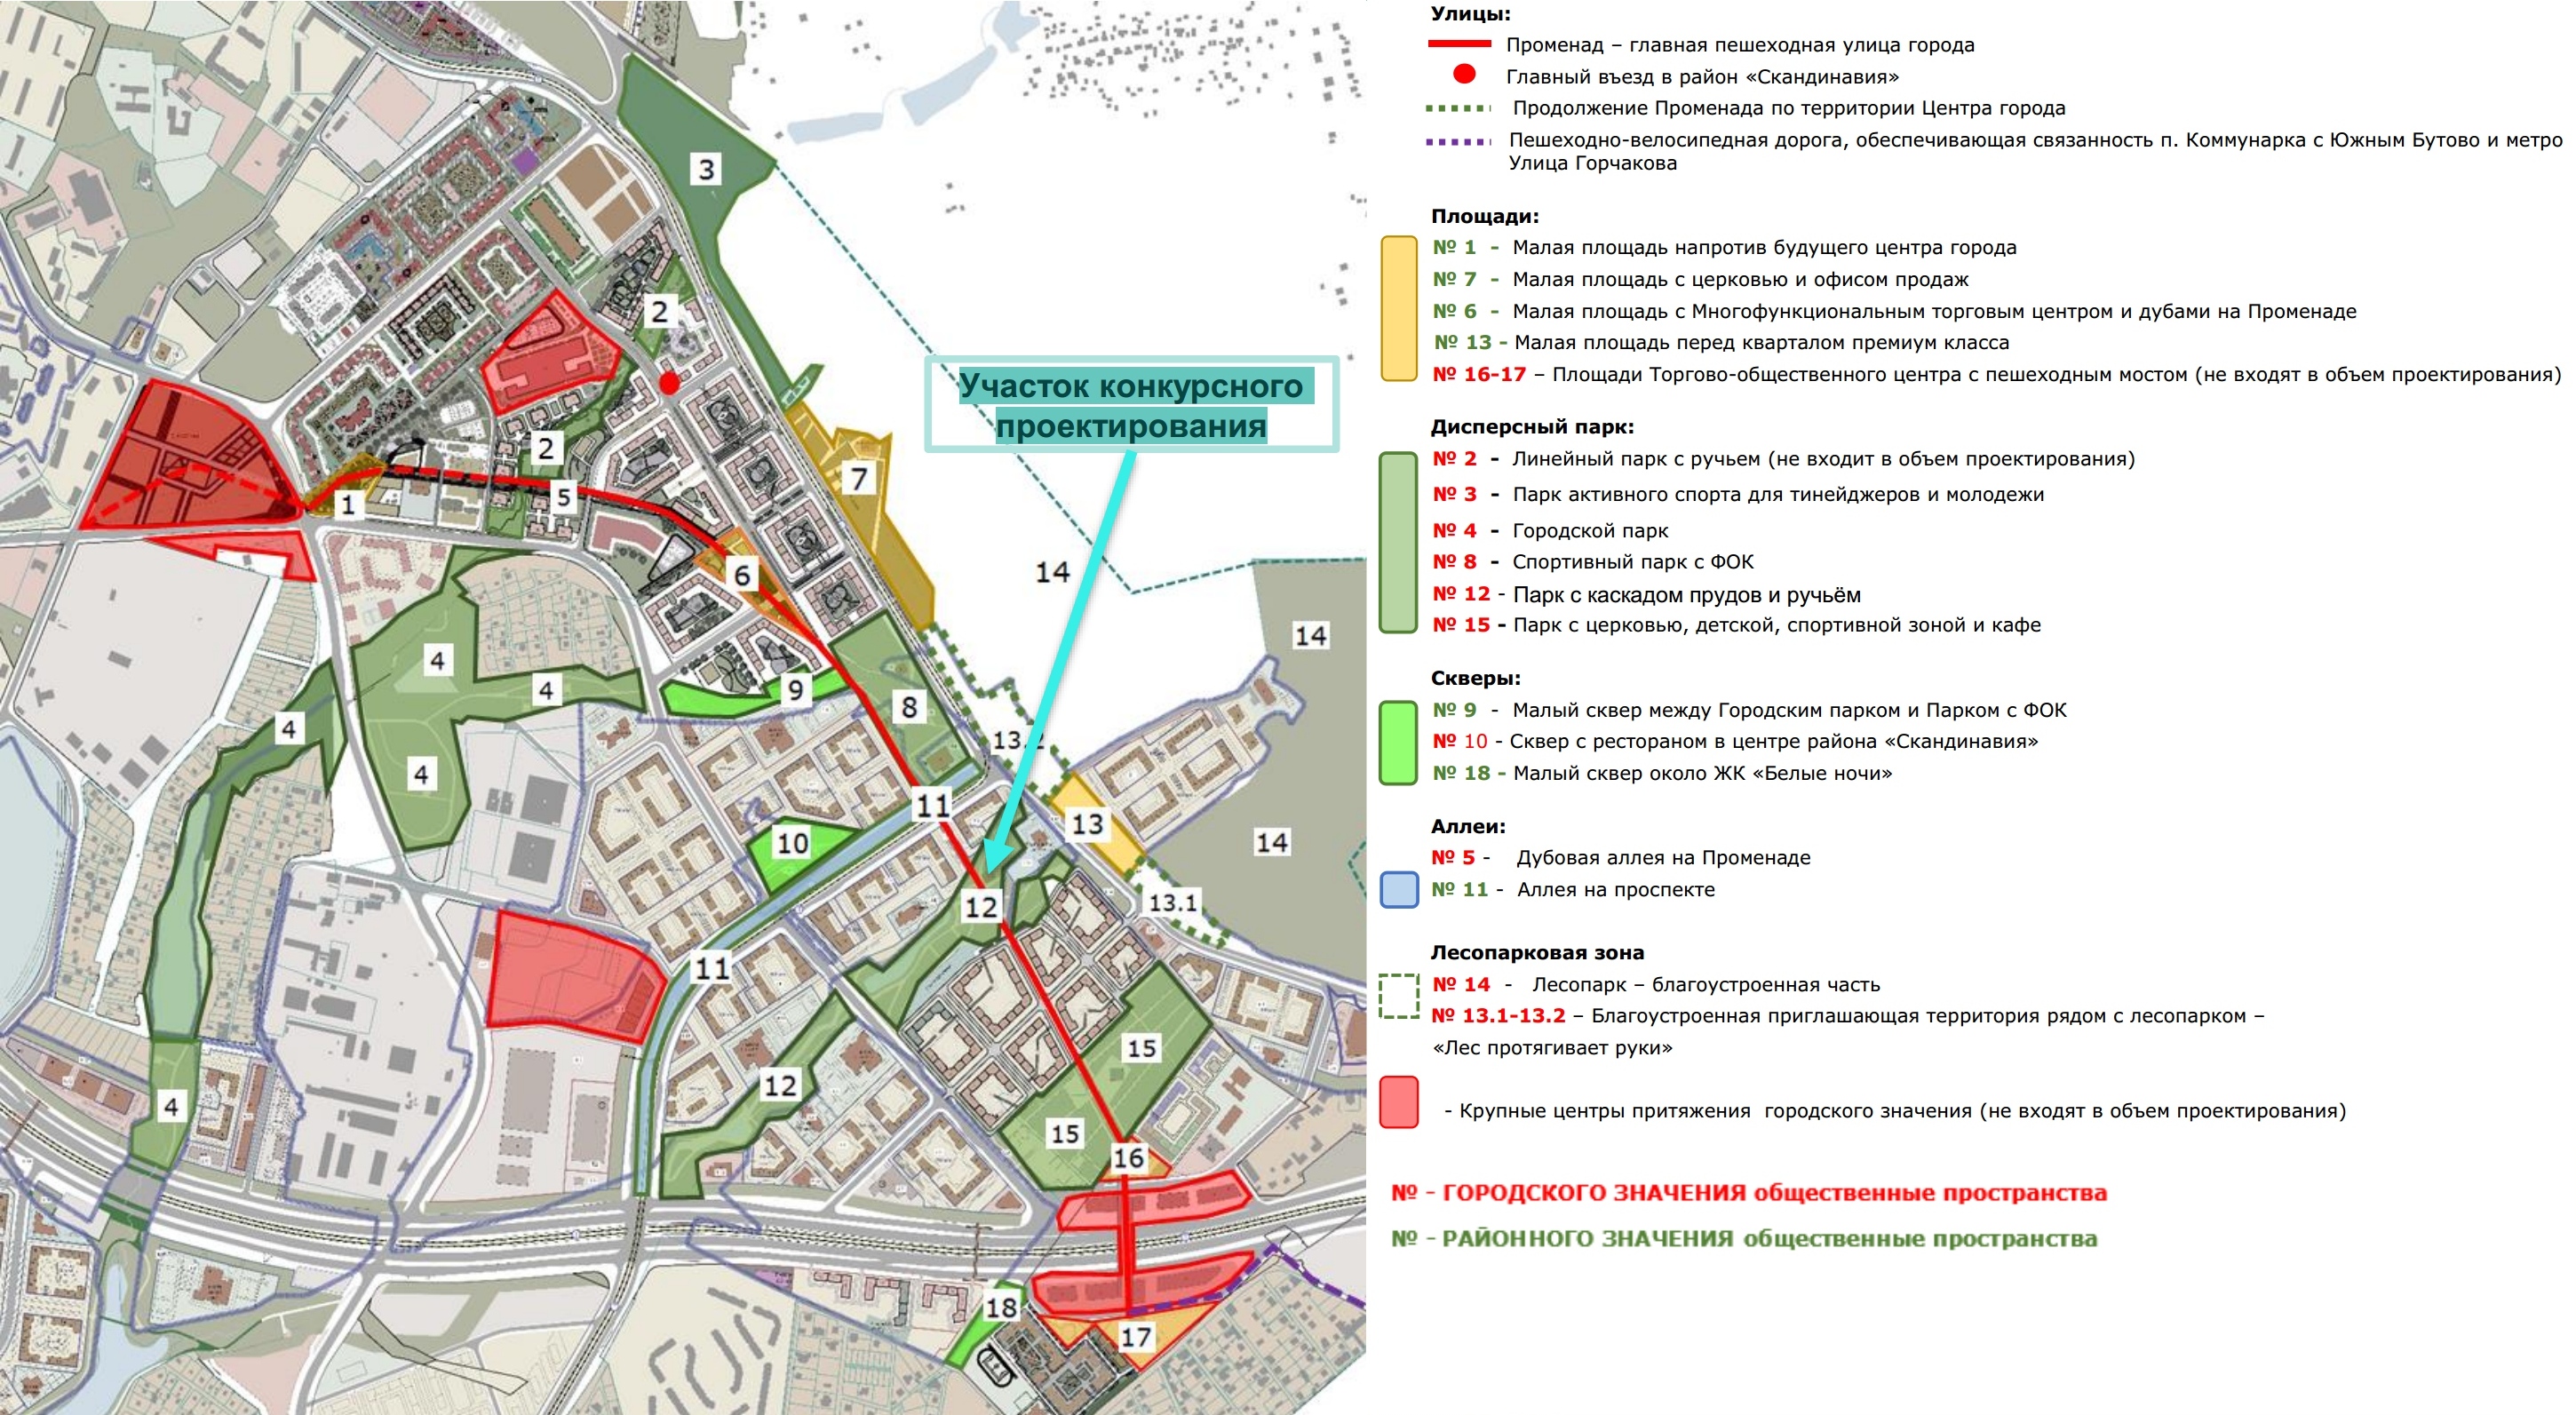 Карта общественных пространств в новых жилых районах «Скандинавия» и «Белые ночи» по основному договору